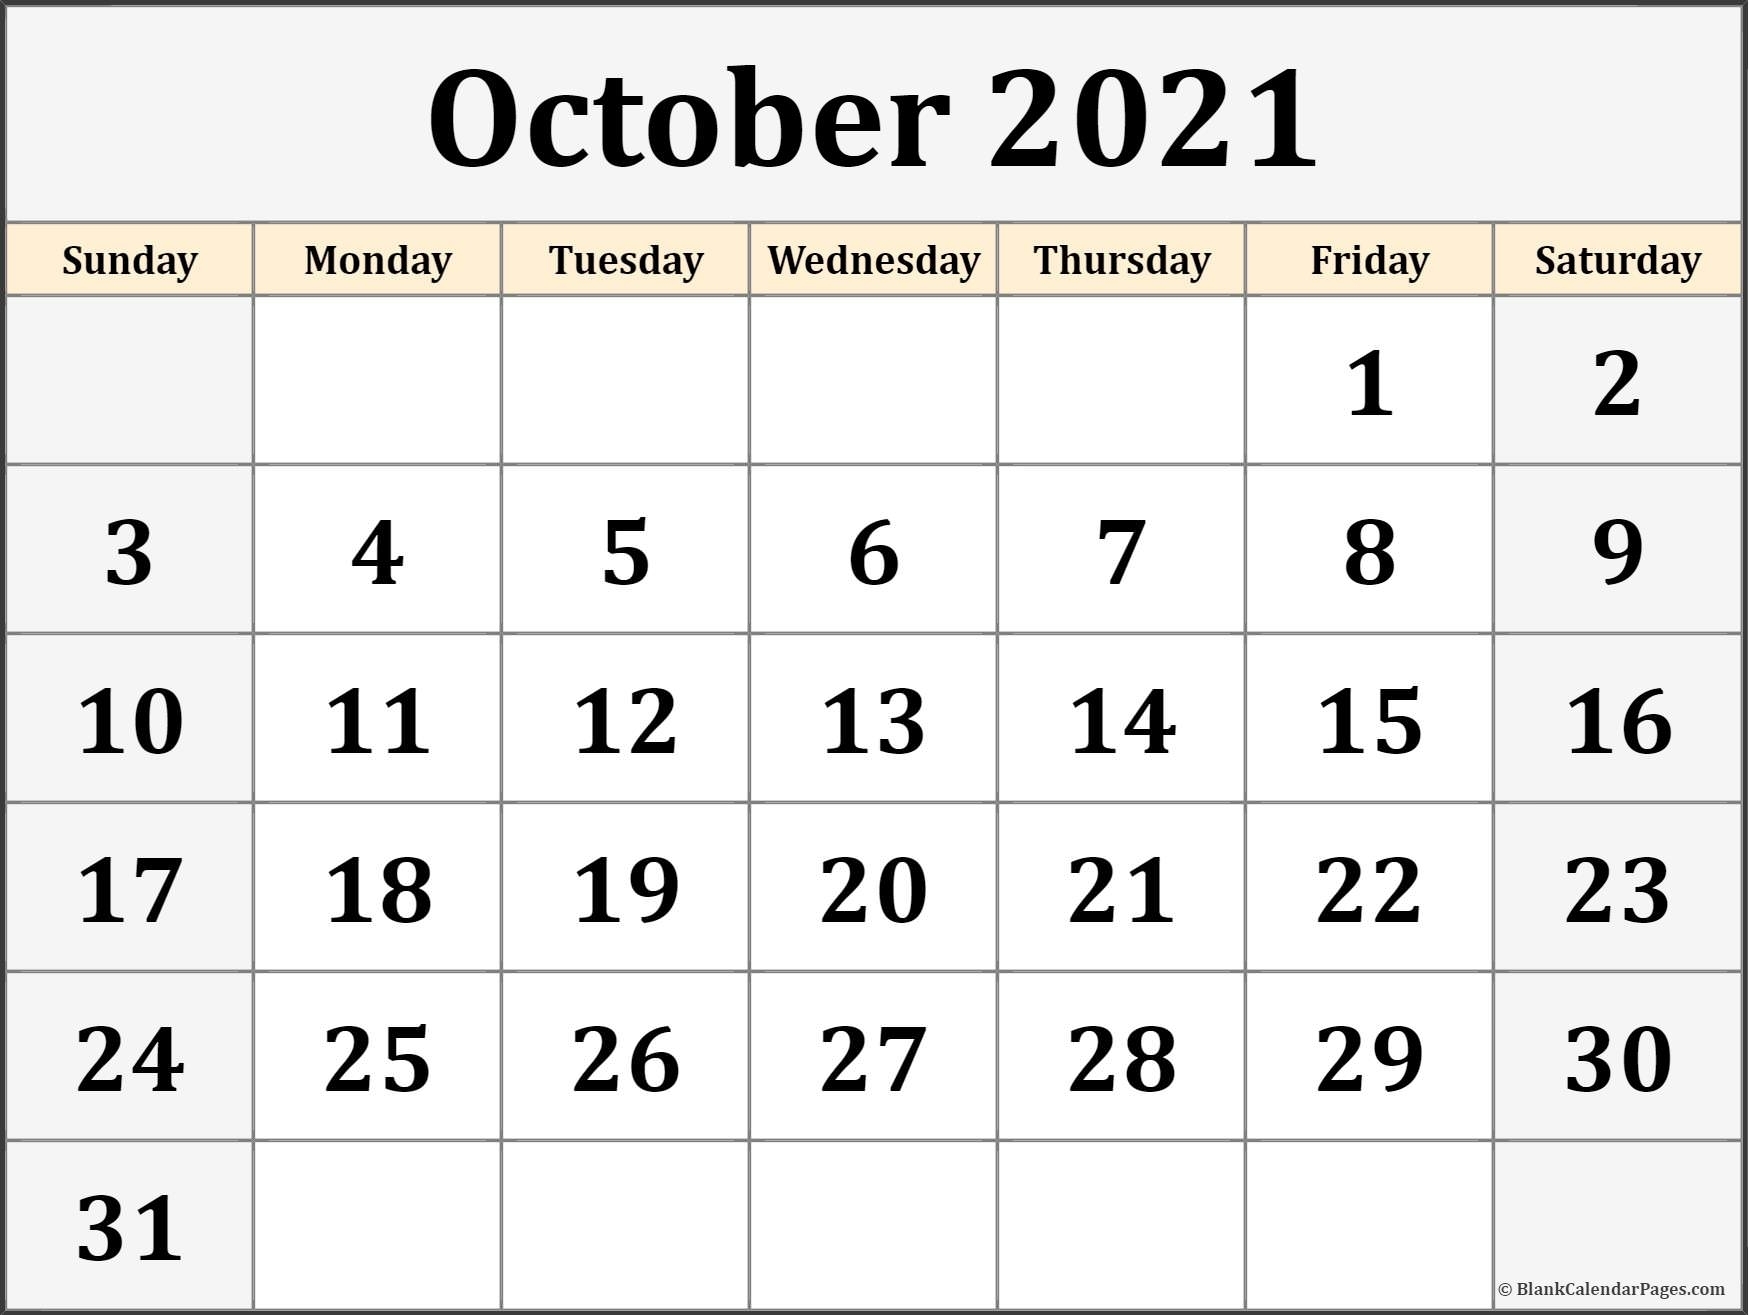 October 2021 Calendar | Free Printable Calendar Templates